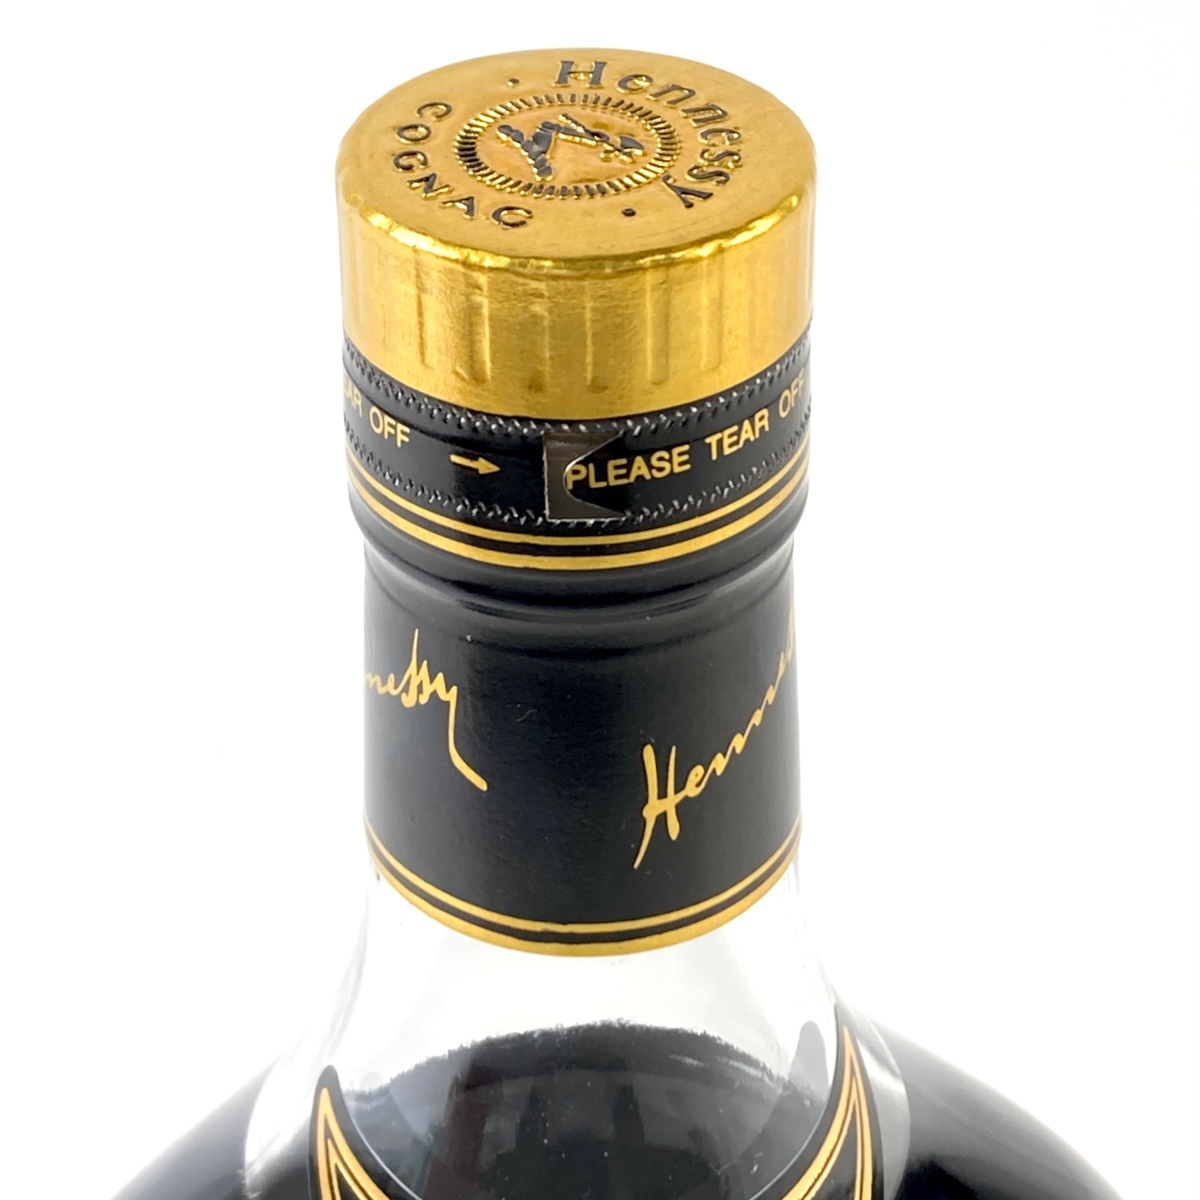 ヘネシー Hennessy XO 金キャップ クリアボトル 700ml ブランデー コニャック 【古酒】の画像2